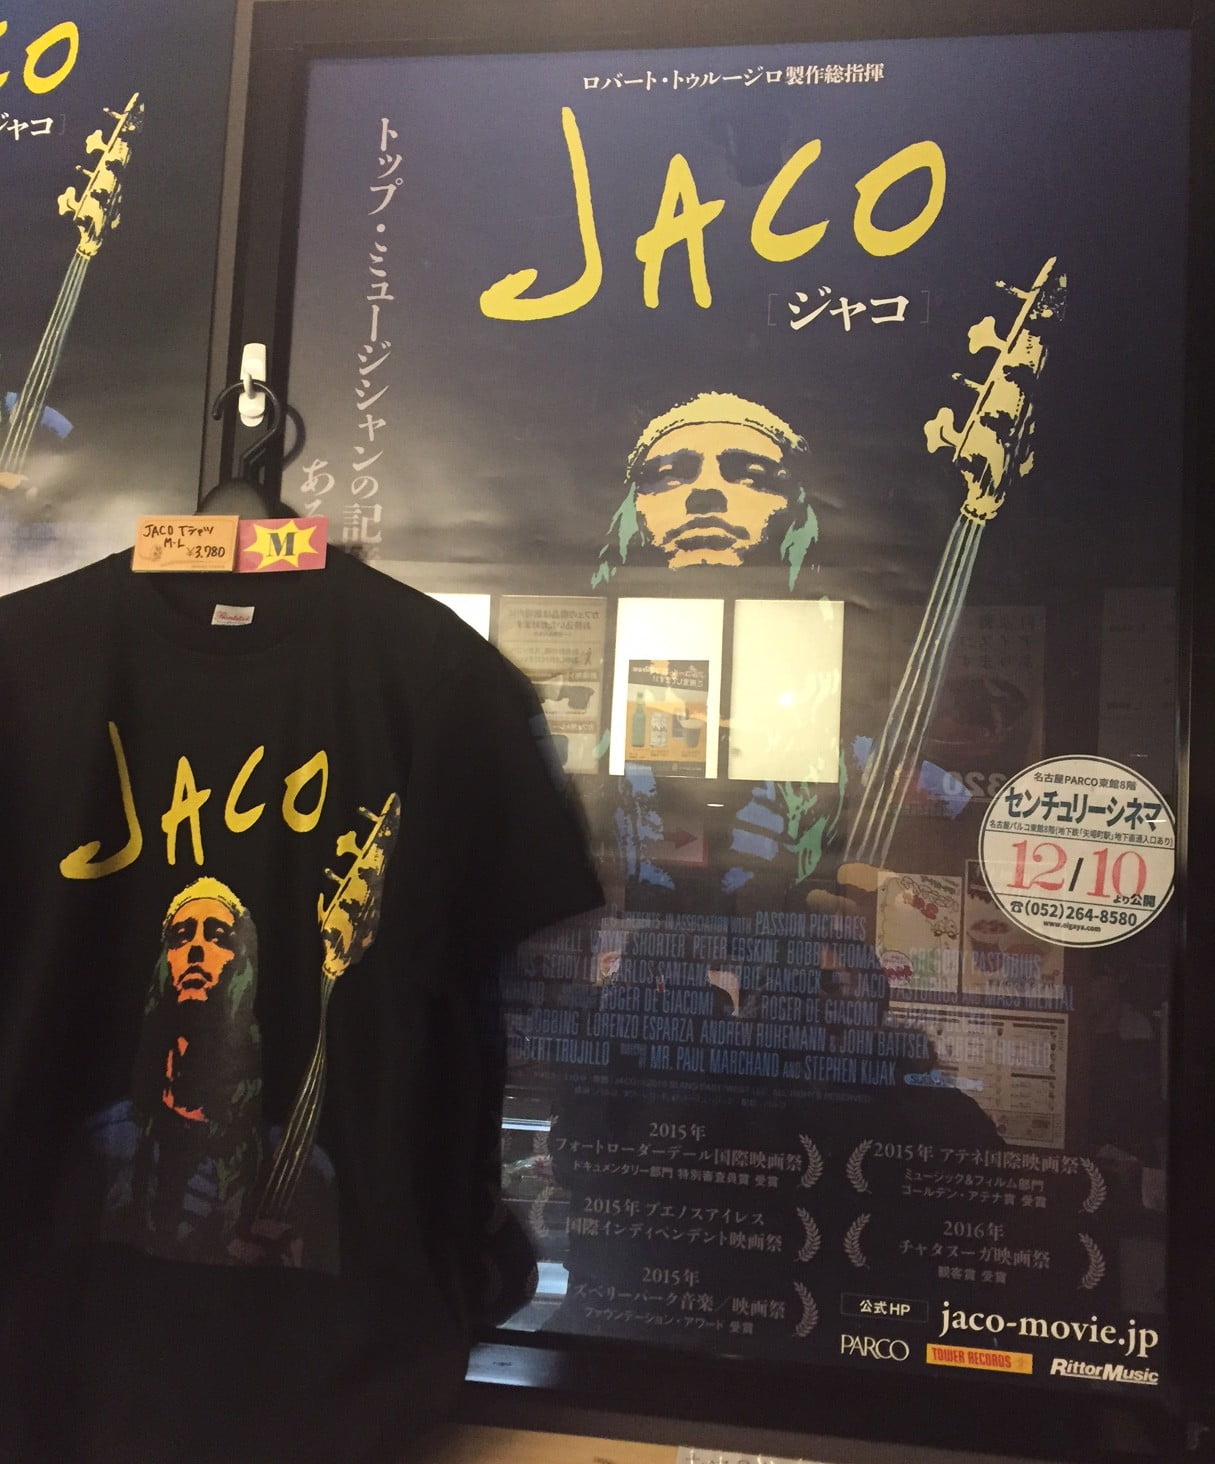 ベーシストはマストで見ろ 映画jaco ジャコ センチュリーシネマで本日最終日 Nsm名古屋スクールオブミュージック ダンス専門学校